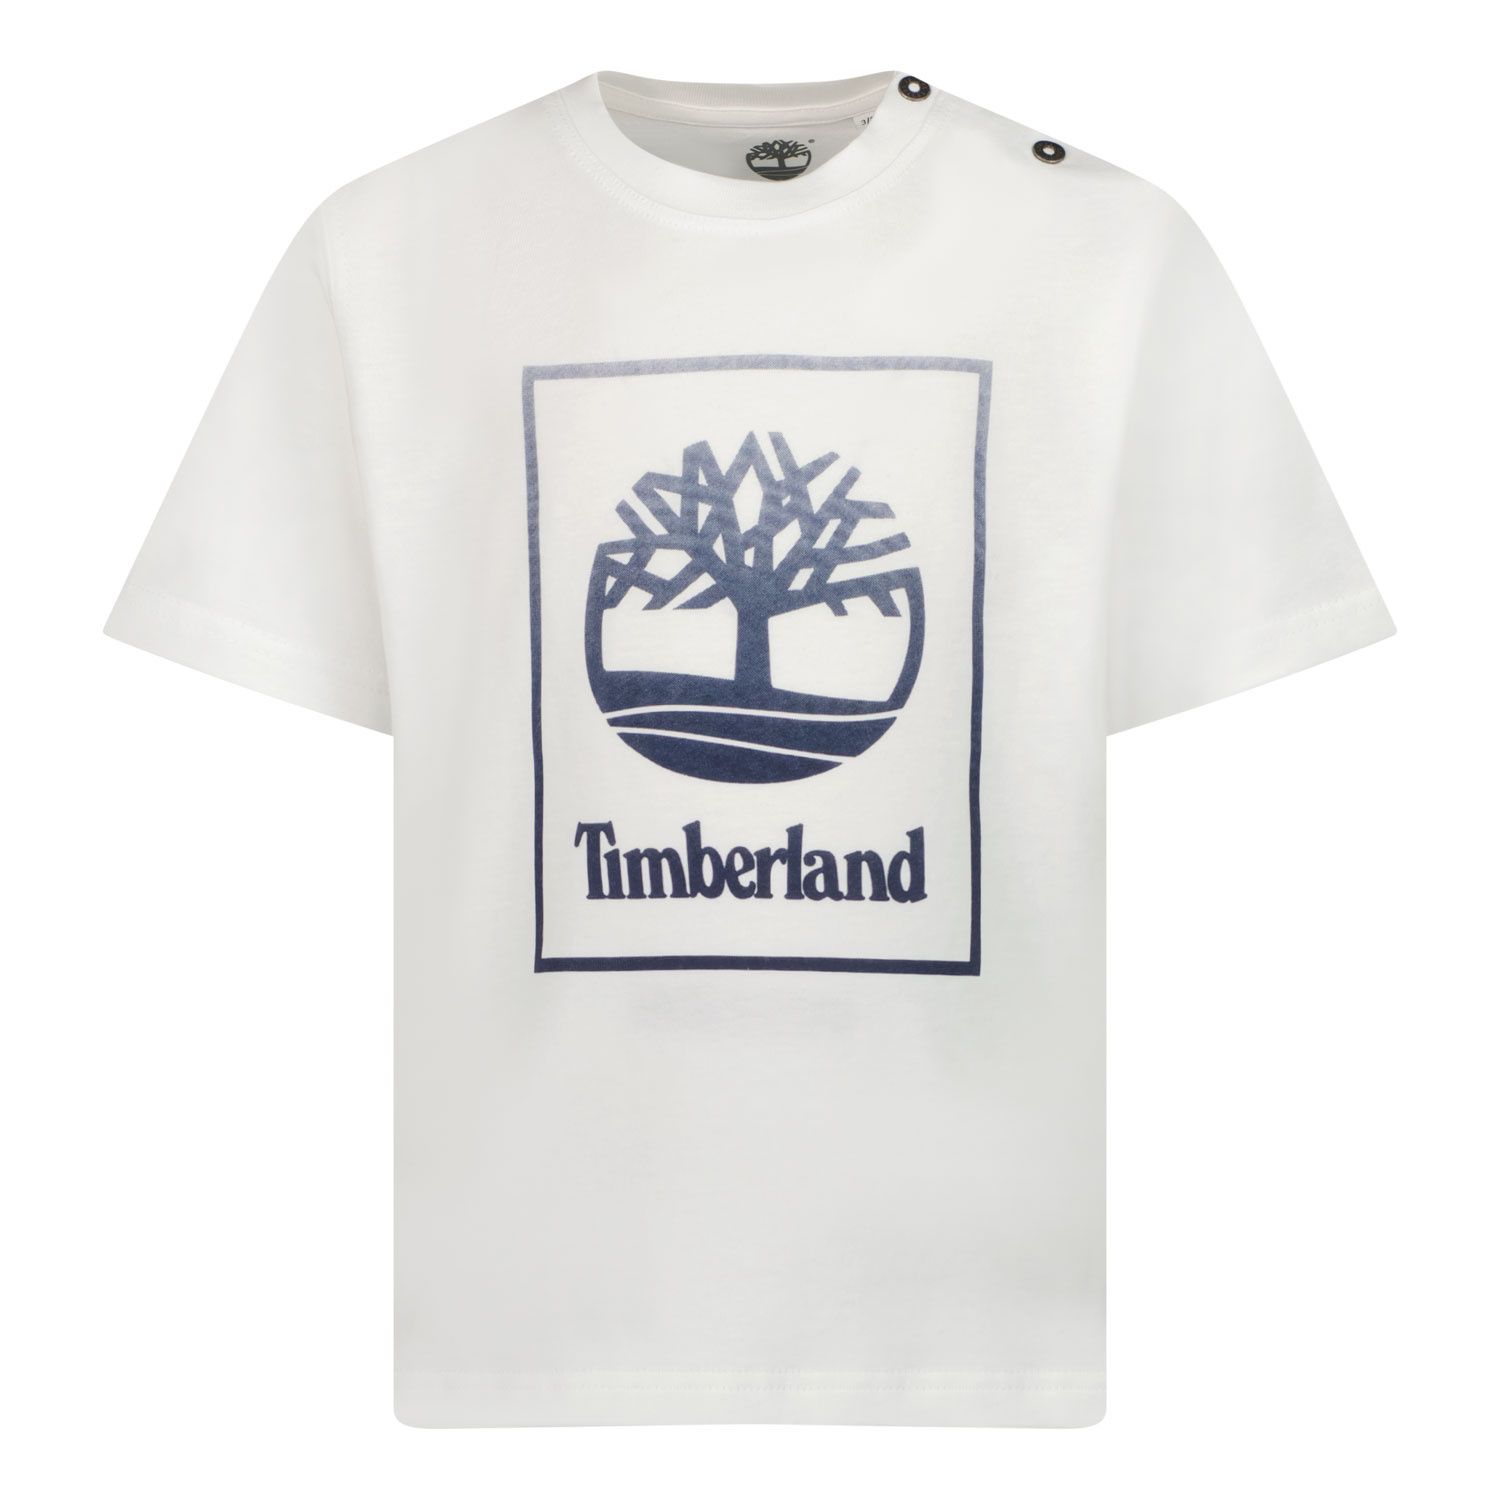 Afbeelding van Timberland T05K40 baby t-shirt wit